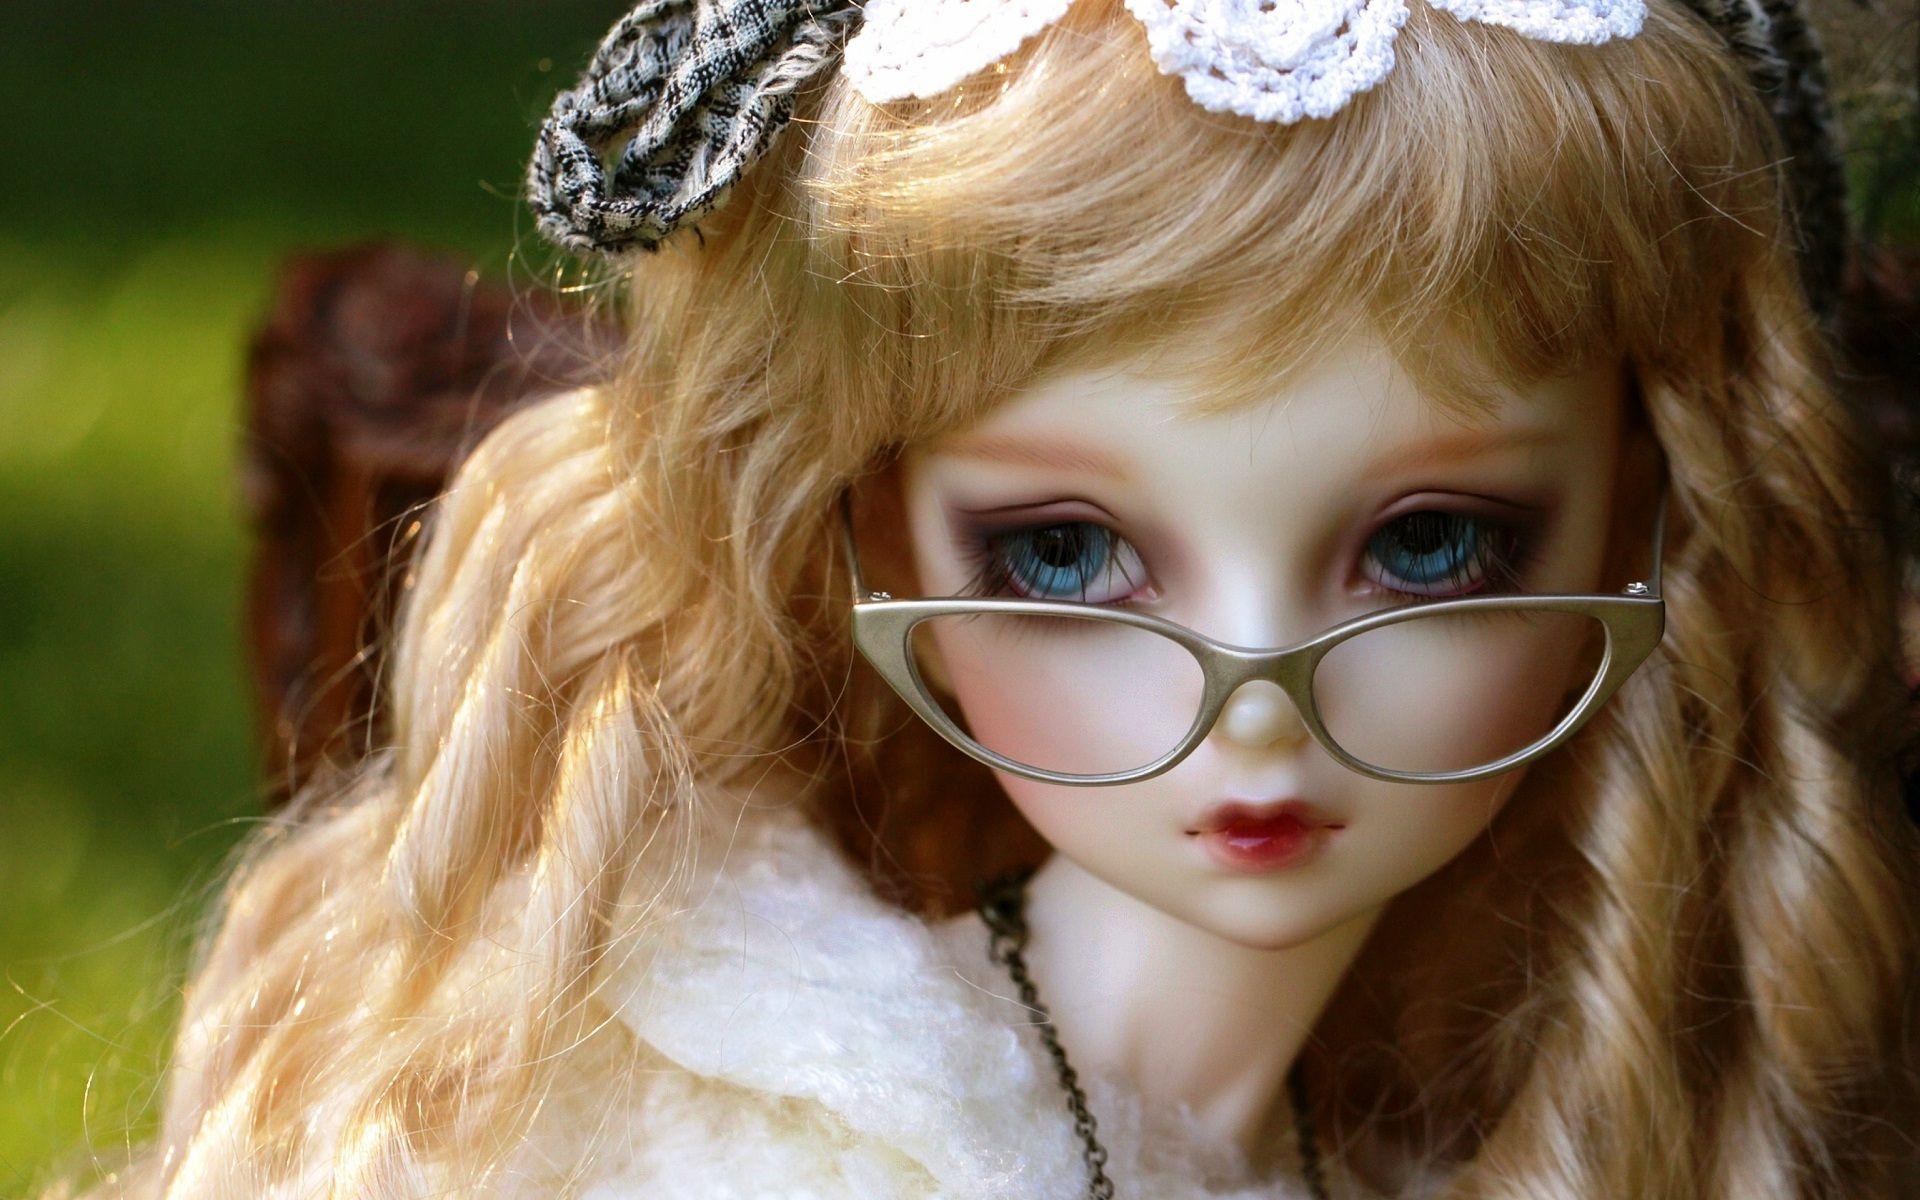 Cute doll specs wear looking so sweet HD wallpaperNew HD wallpaper